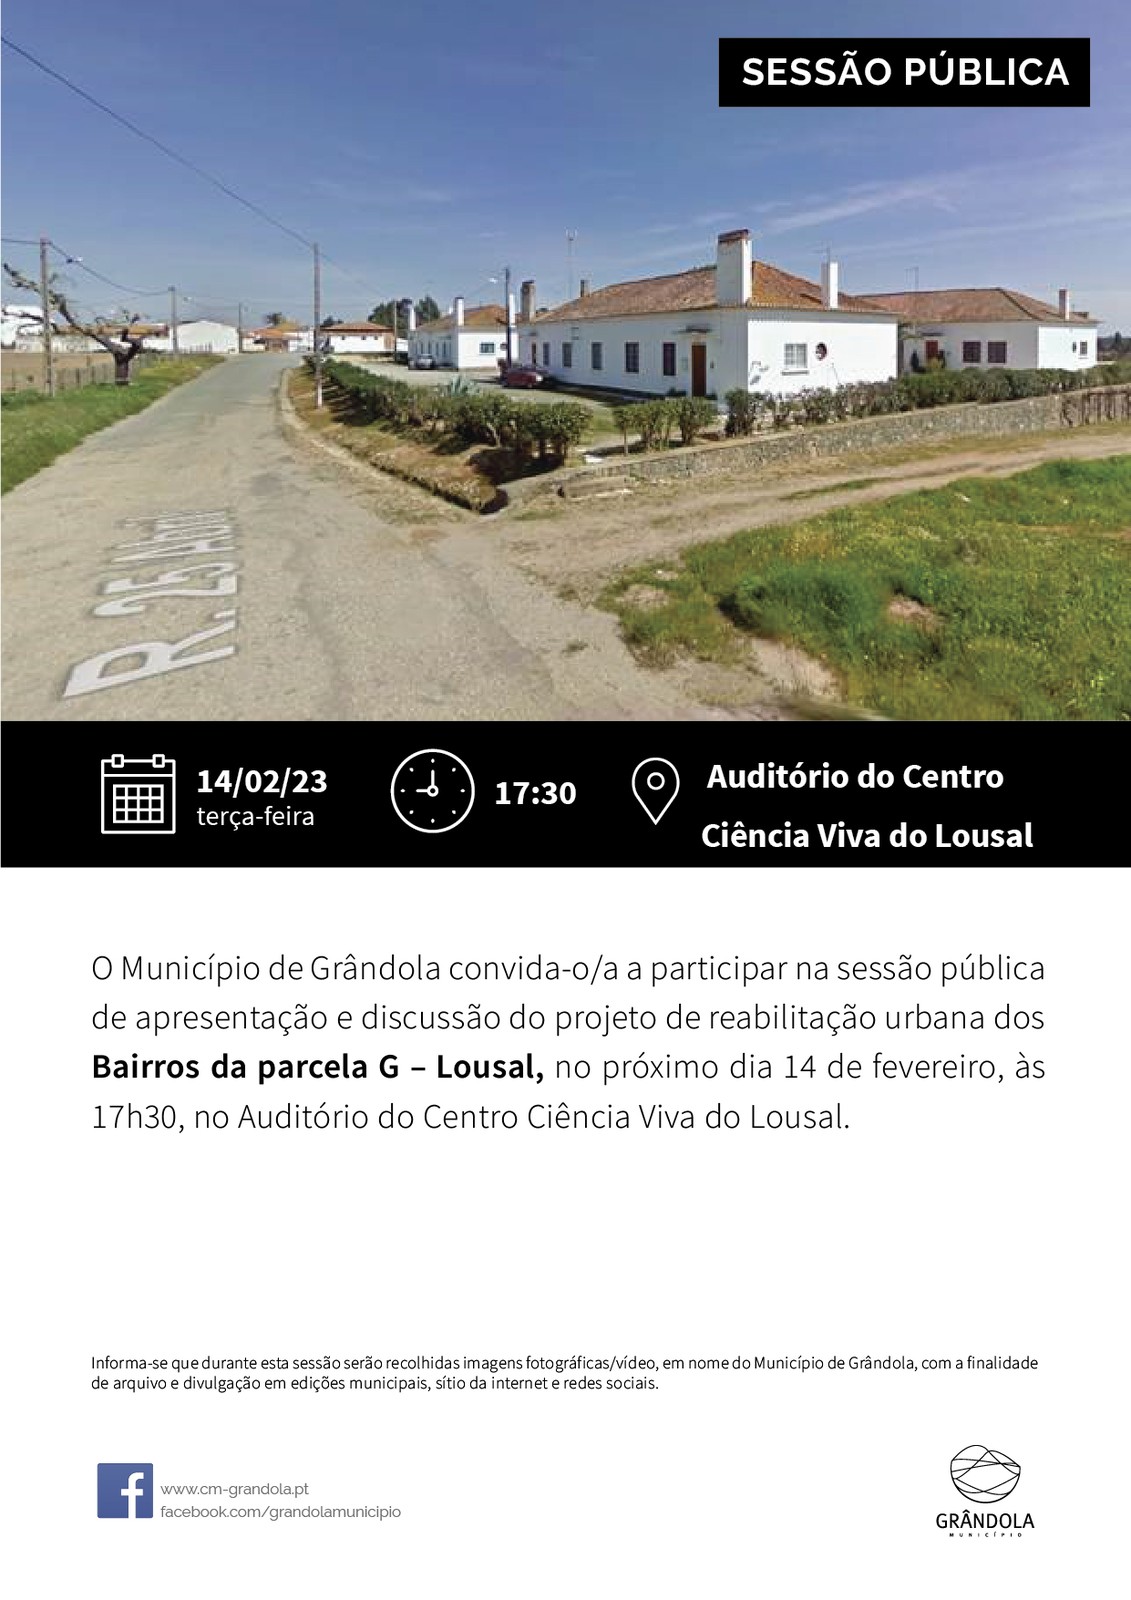 SESSÃO PÚBLICA | Apresentação e discussão do projeto de reabilitação urbana dos Bairros da Parcel...